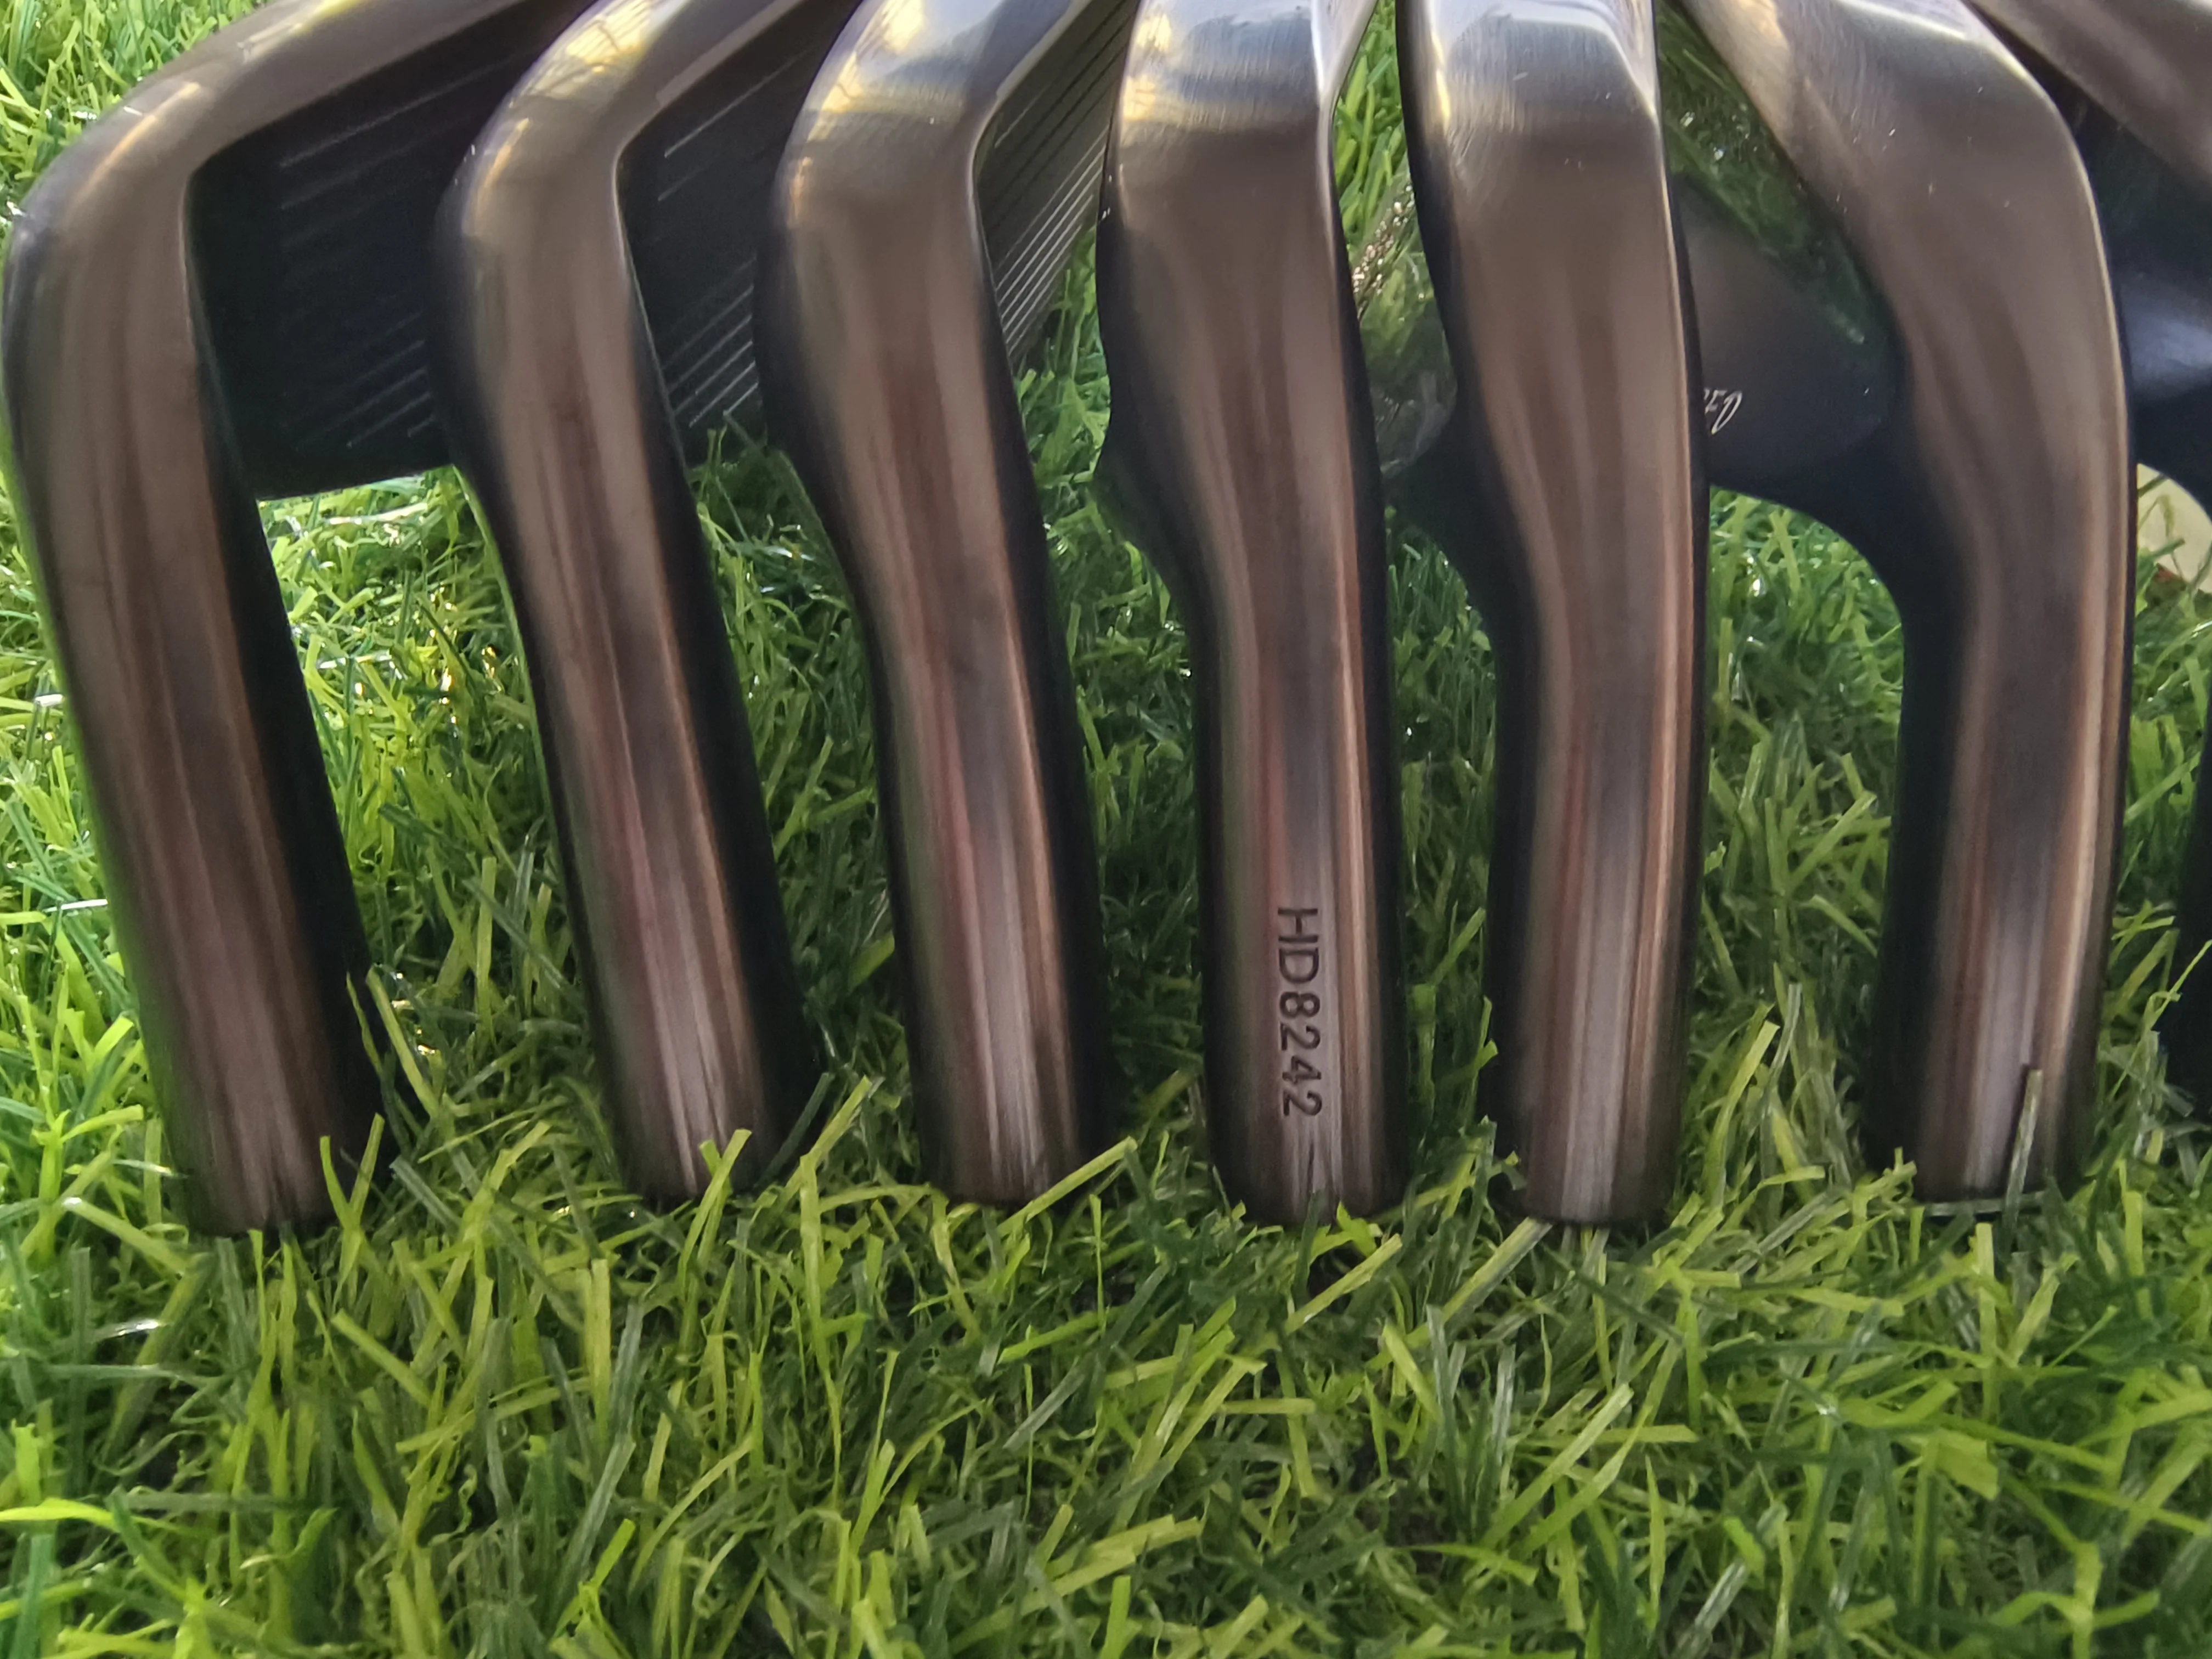 Новые утюги для гольфа, черный оригинальный продукт, утюги HD ROUTE 66, набор кованых утюгов для гольфа (4 5 6 7 8 9 P)